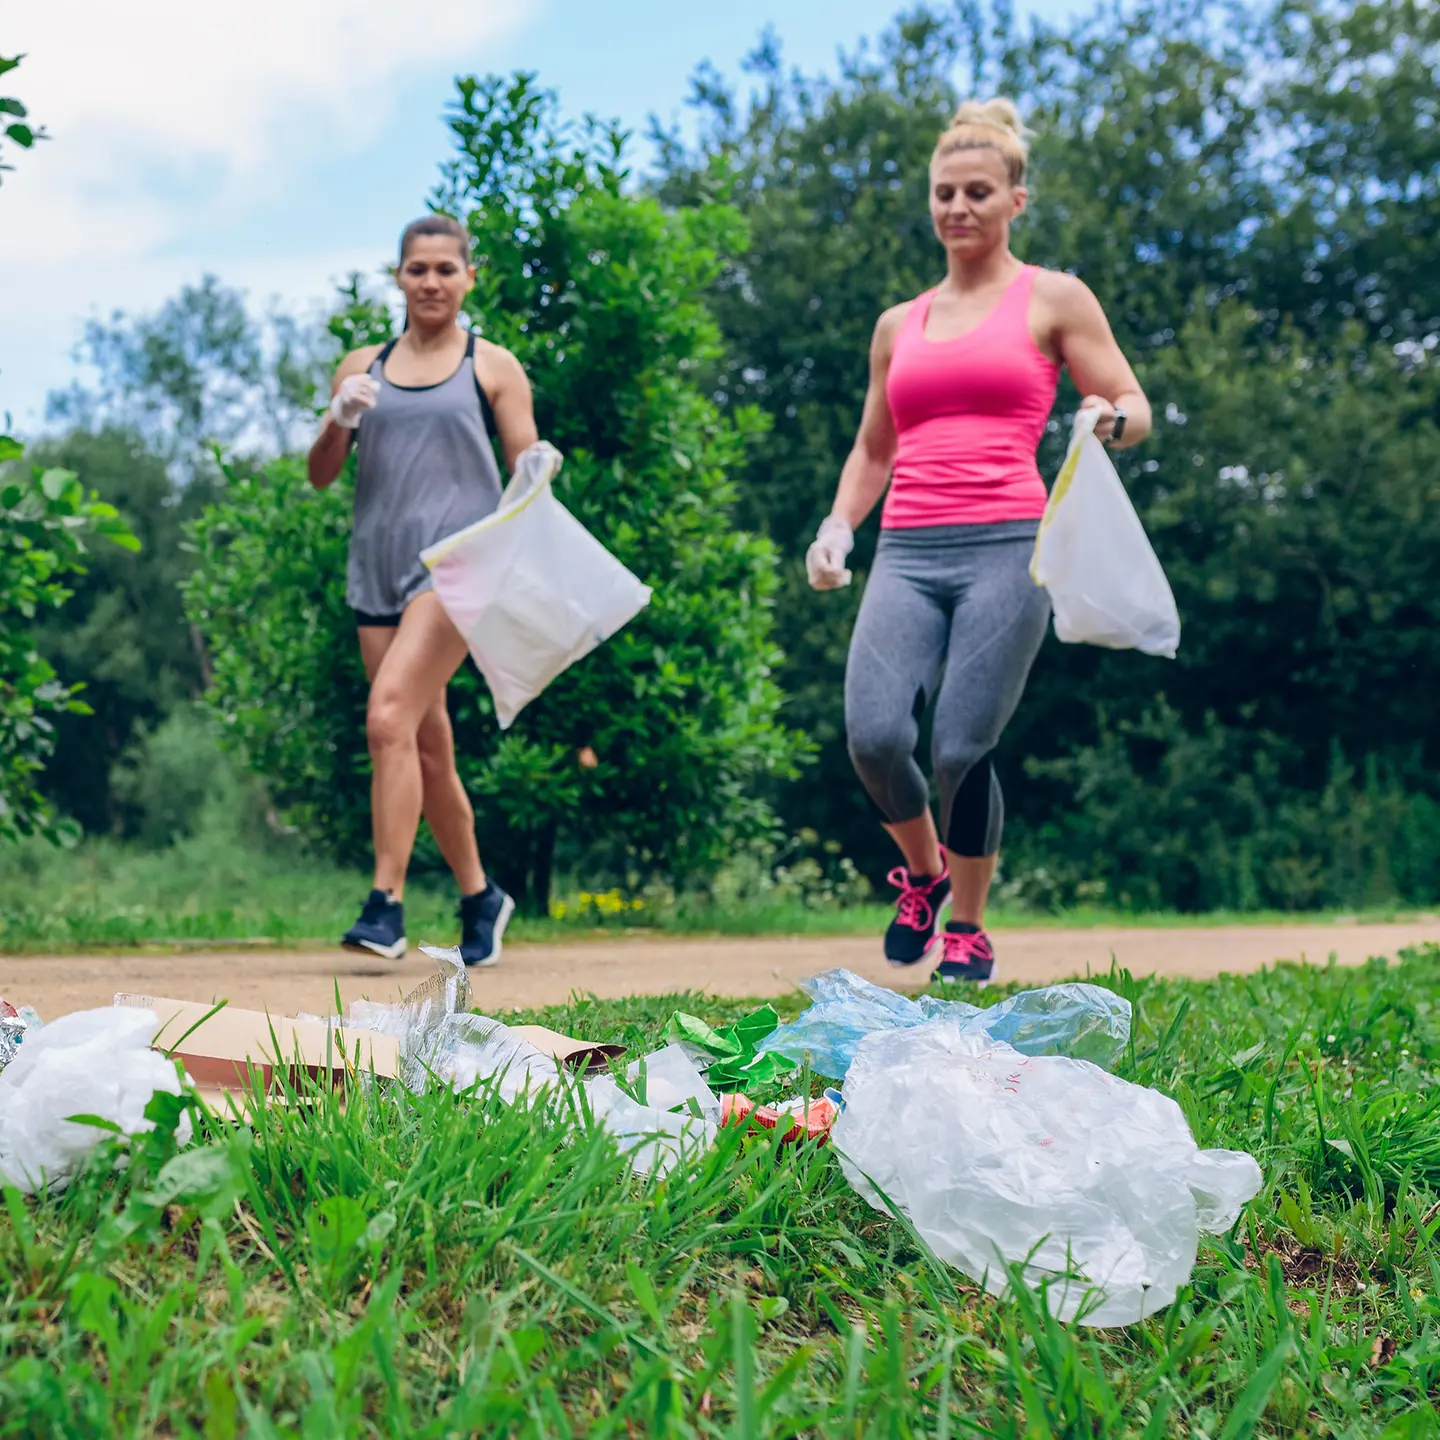 Das Bild zeigt zwei Frauen beim Joggen mit Mülltüten zum Müllsammeln.